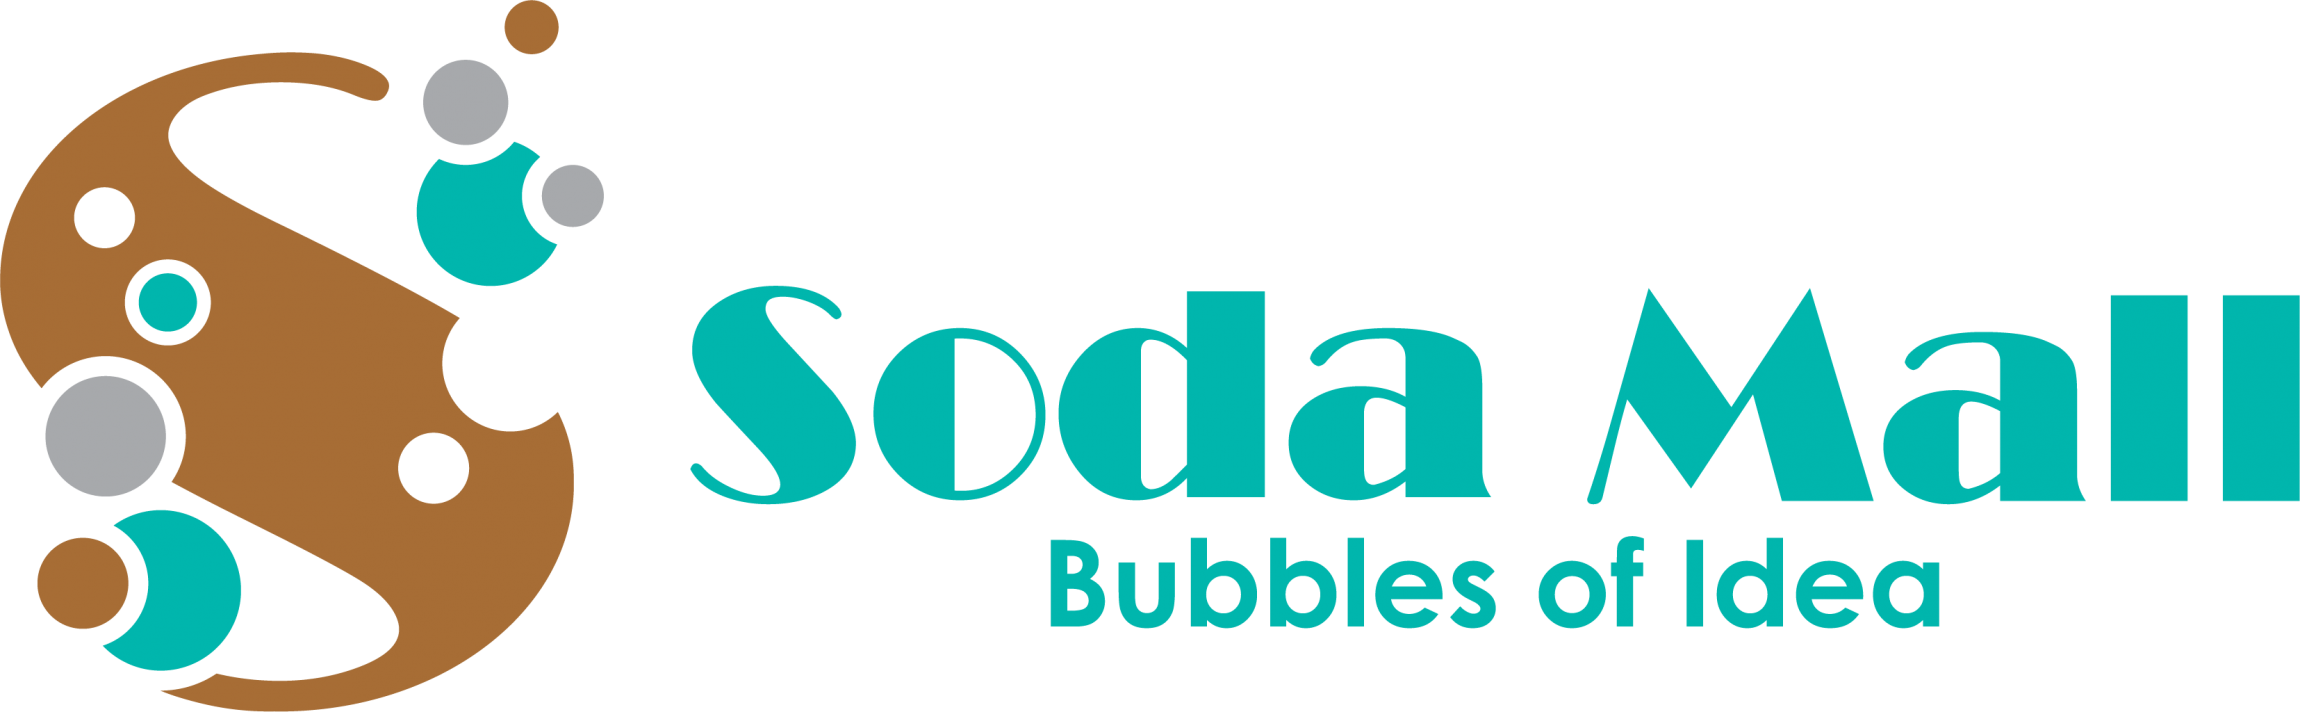 本頁圖片/檔案 - Soda-Mall-Logo_Landscape